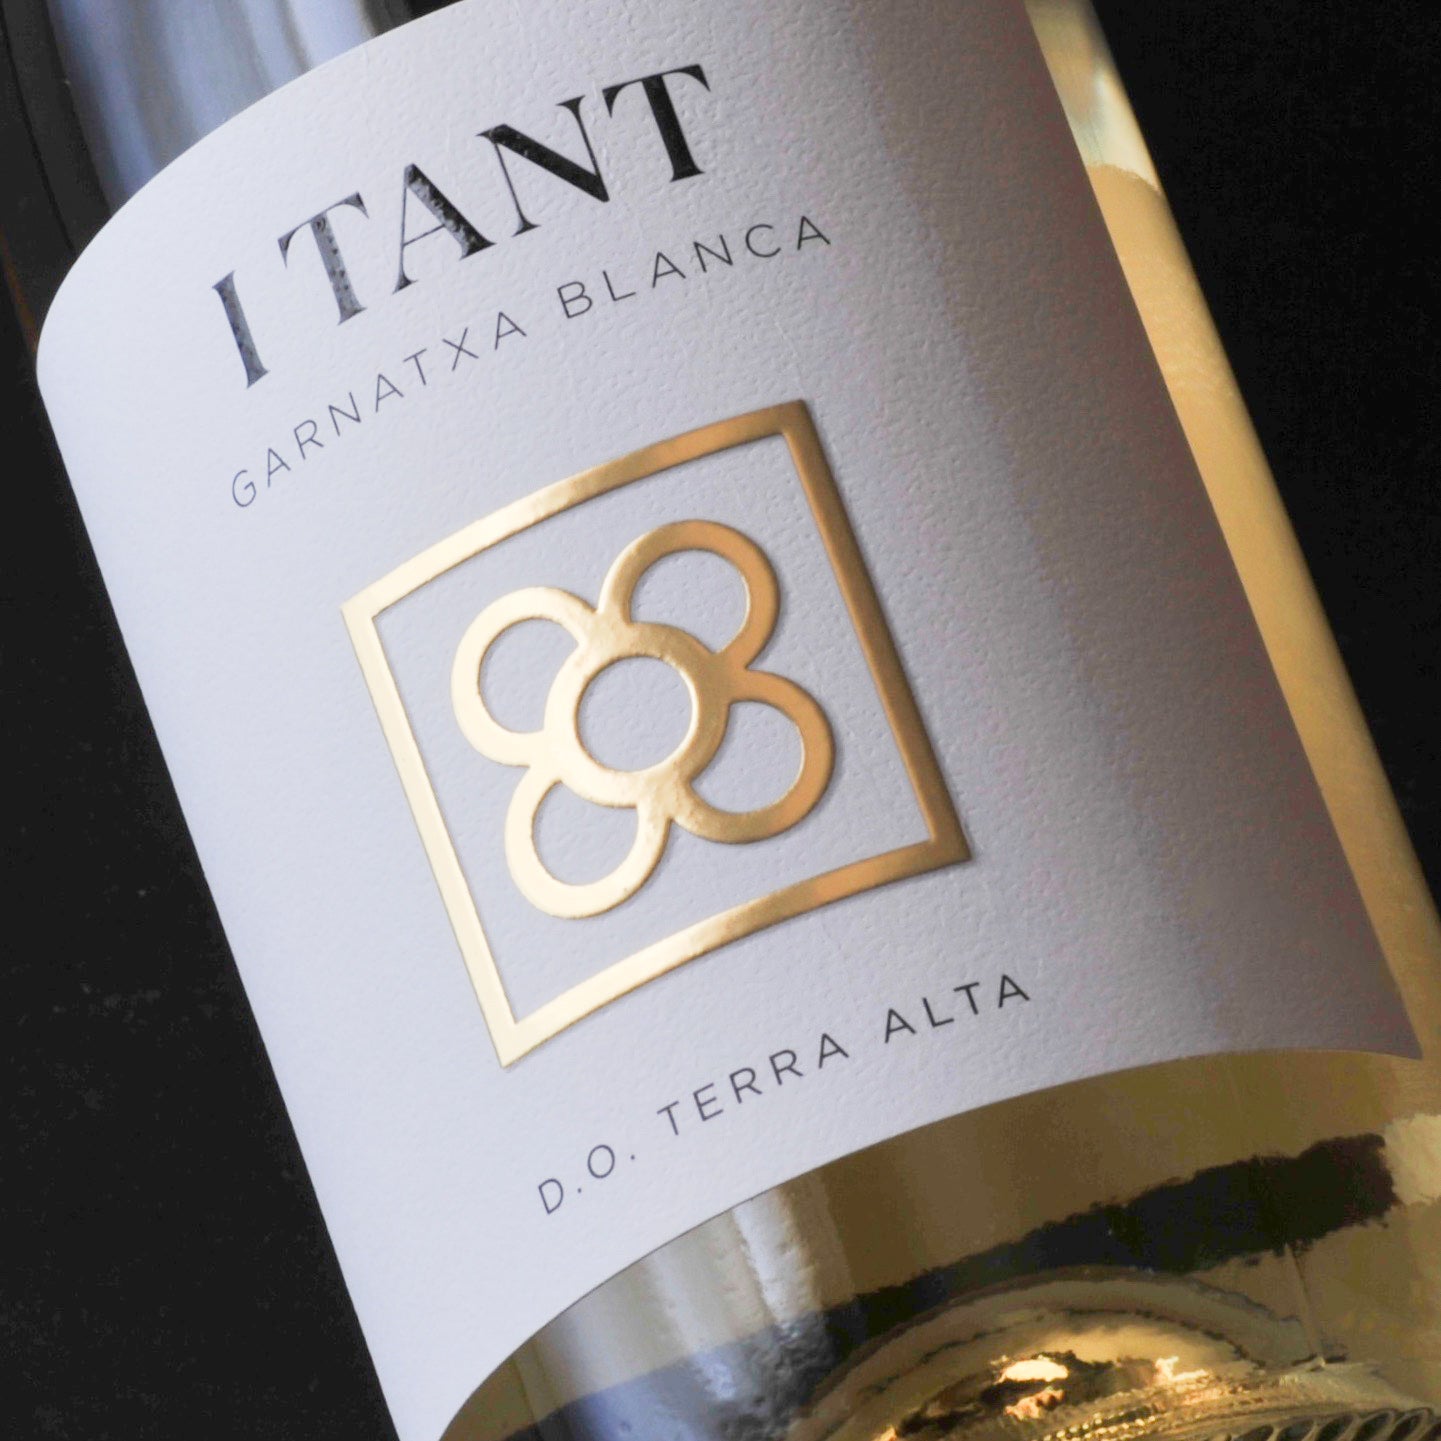 iTant Garnatxa Blanca - Simply Spanish Wine